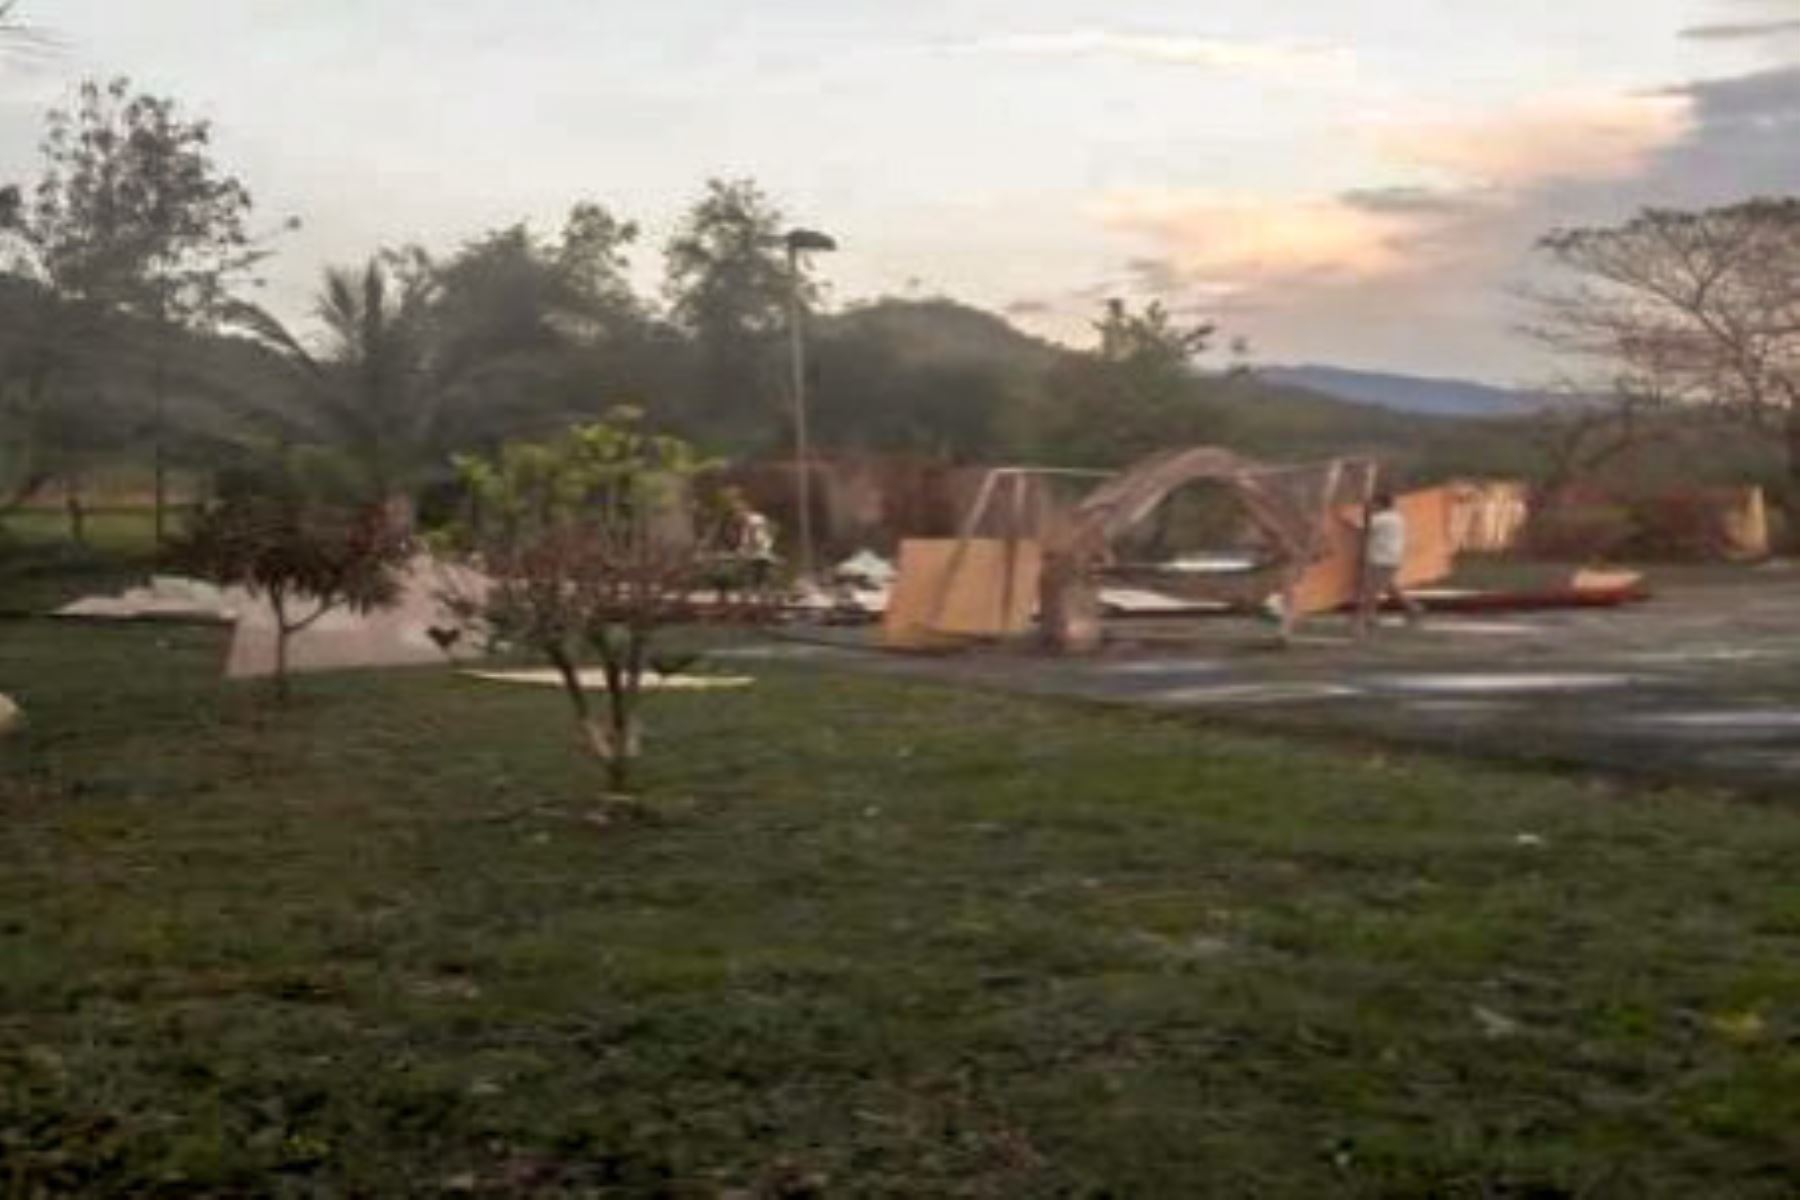 La ocurrencia de lluvias acompañadas de vientos fuertes en la región San Martín ha dejado hasta el momento 16 familias afectadas en el distrito de Juan Guerra, al haberse destechado las viviendas, al igual que dos instituciones educativas, informó el Instituto Nacional de Defensa Civil (Indeci).